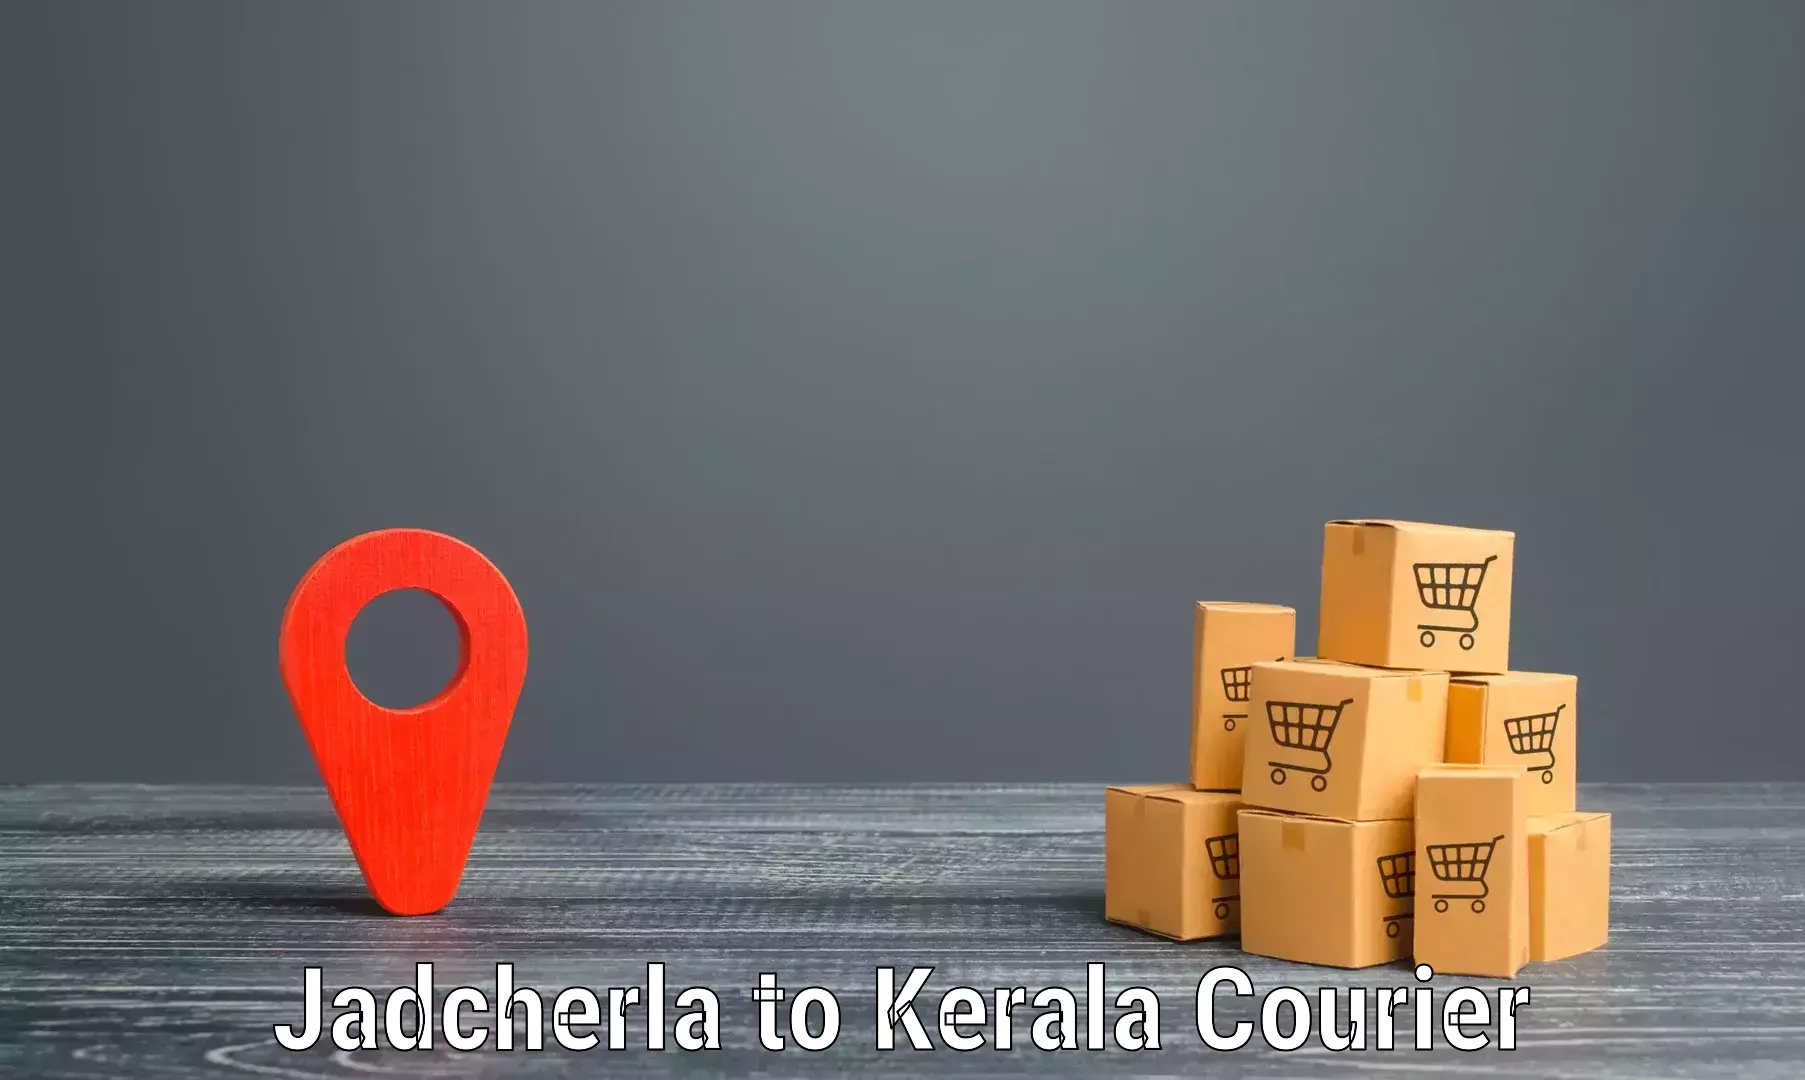 State-of-the-art courier technology Jadcherla to Kalpetta